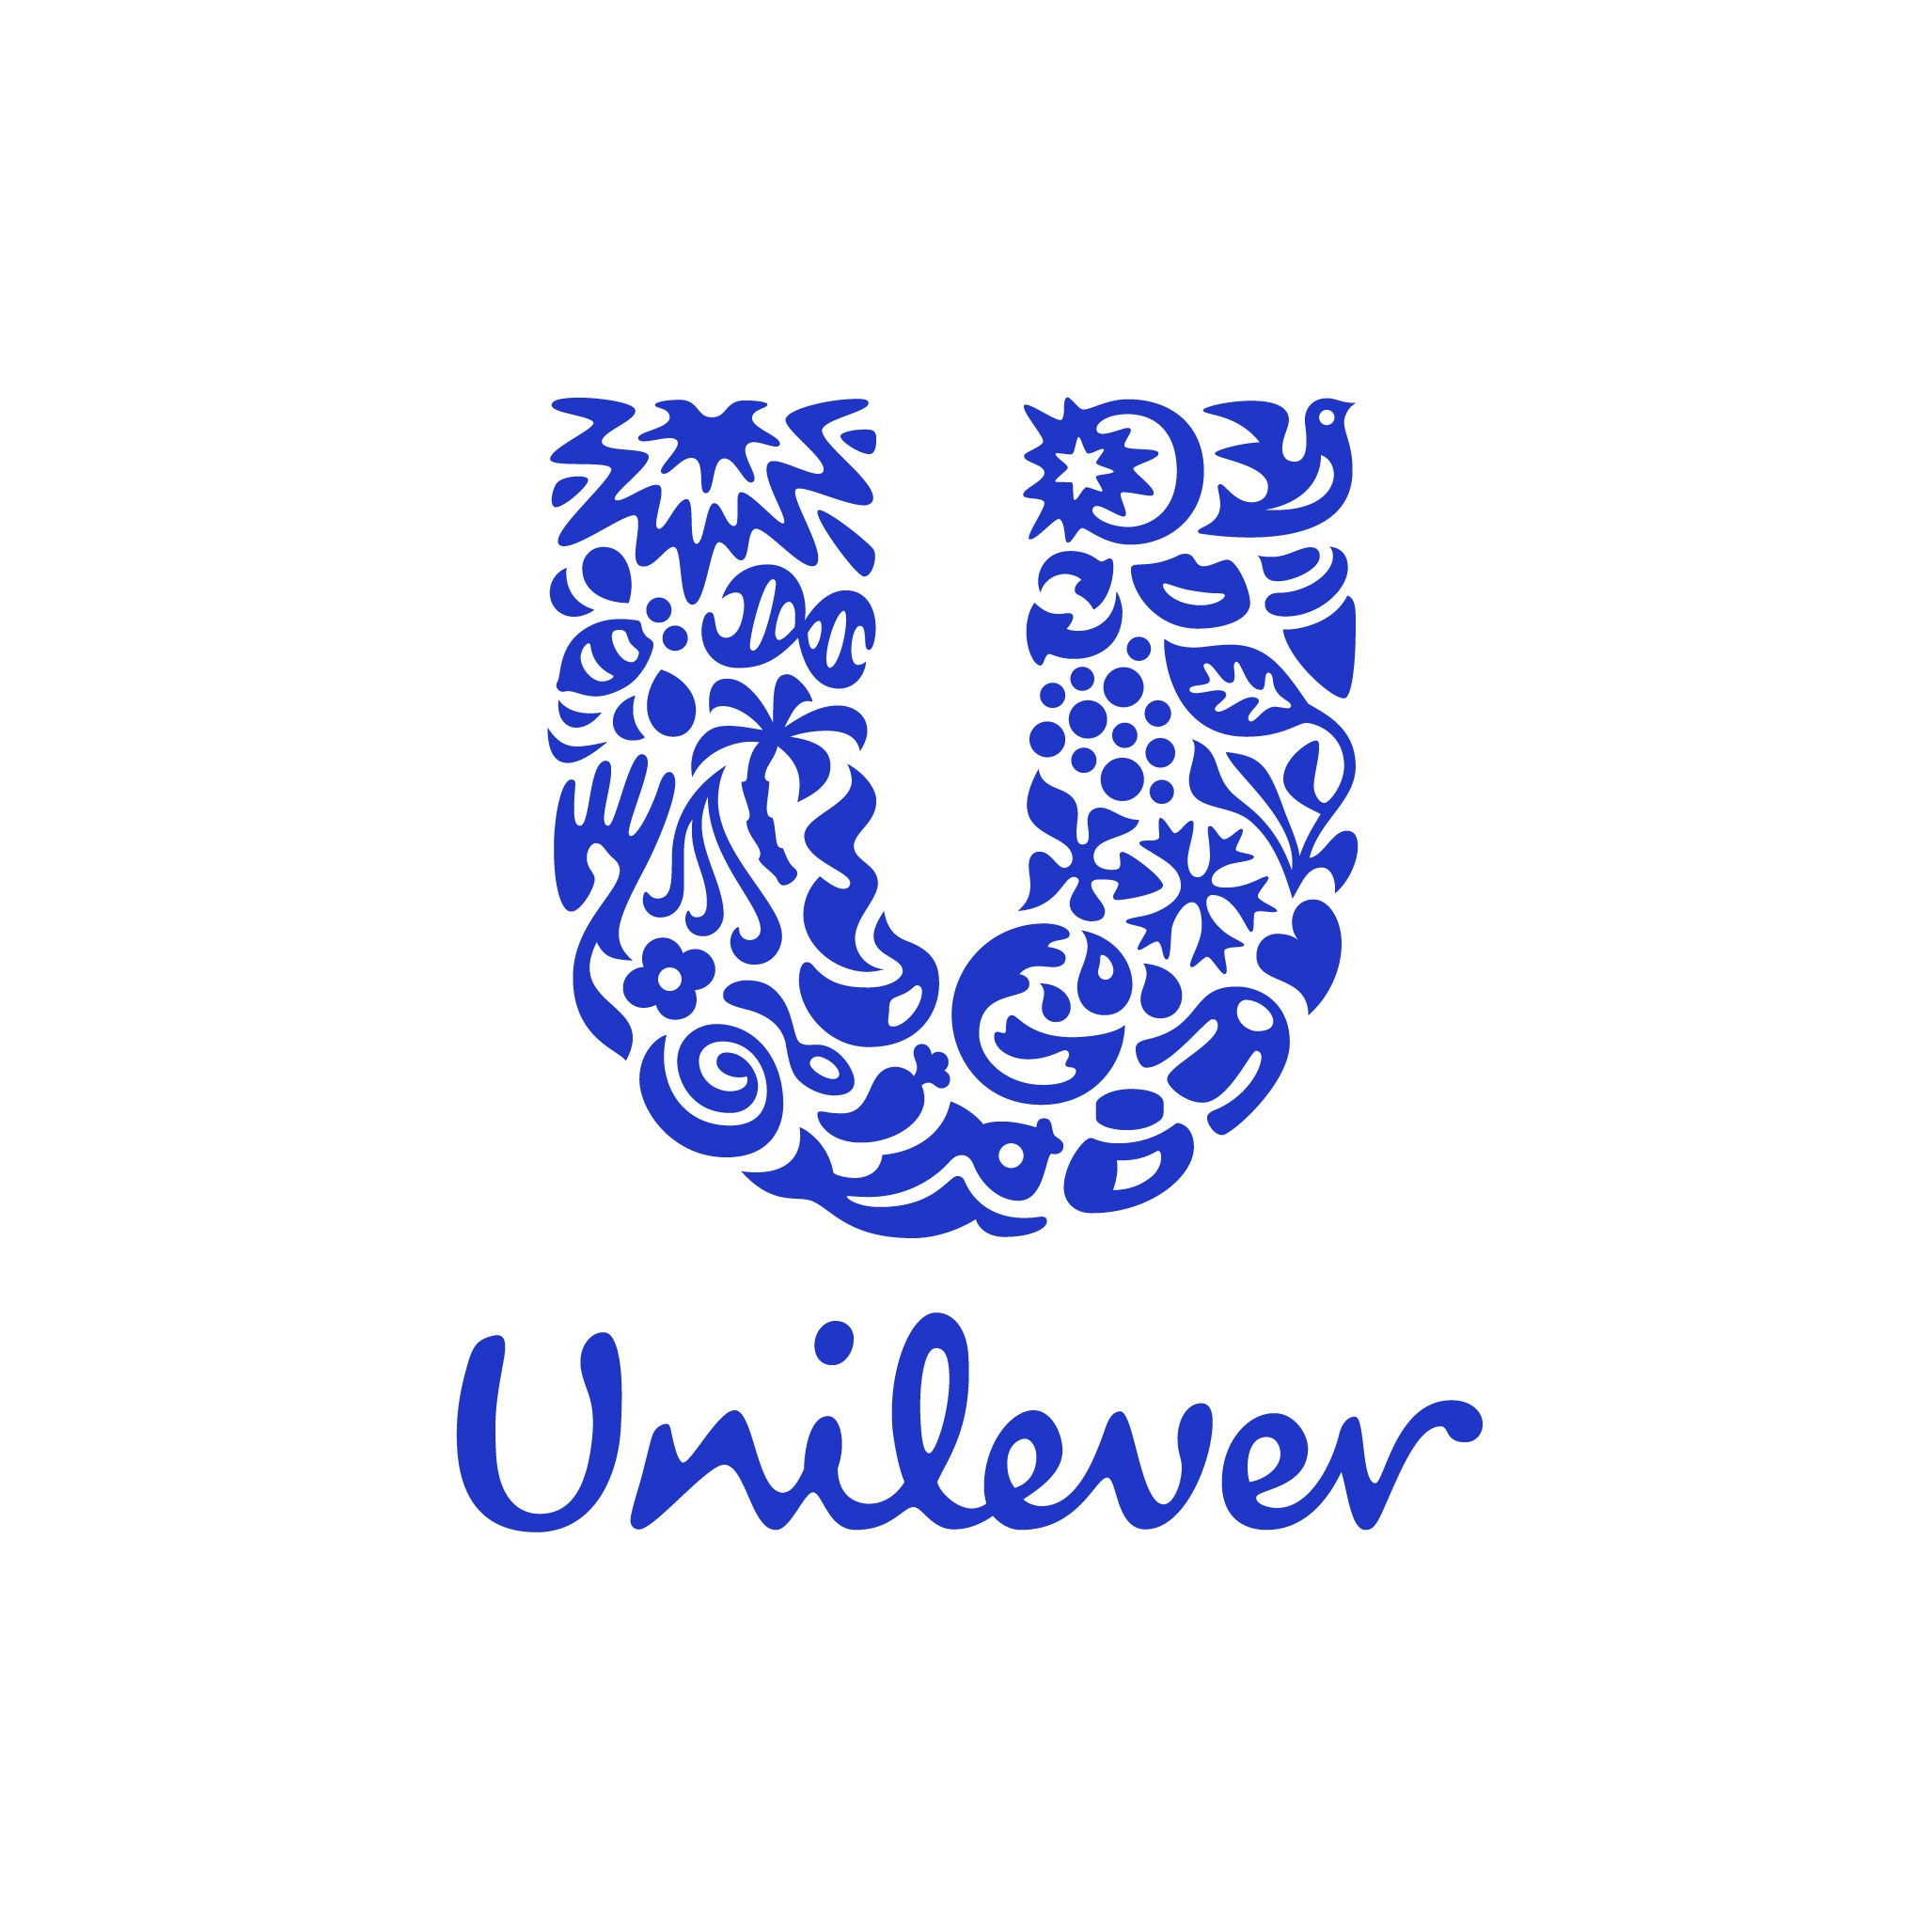 Unilever Poland Services Sp. z o.o